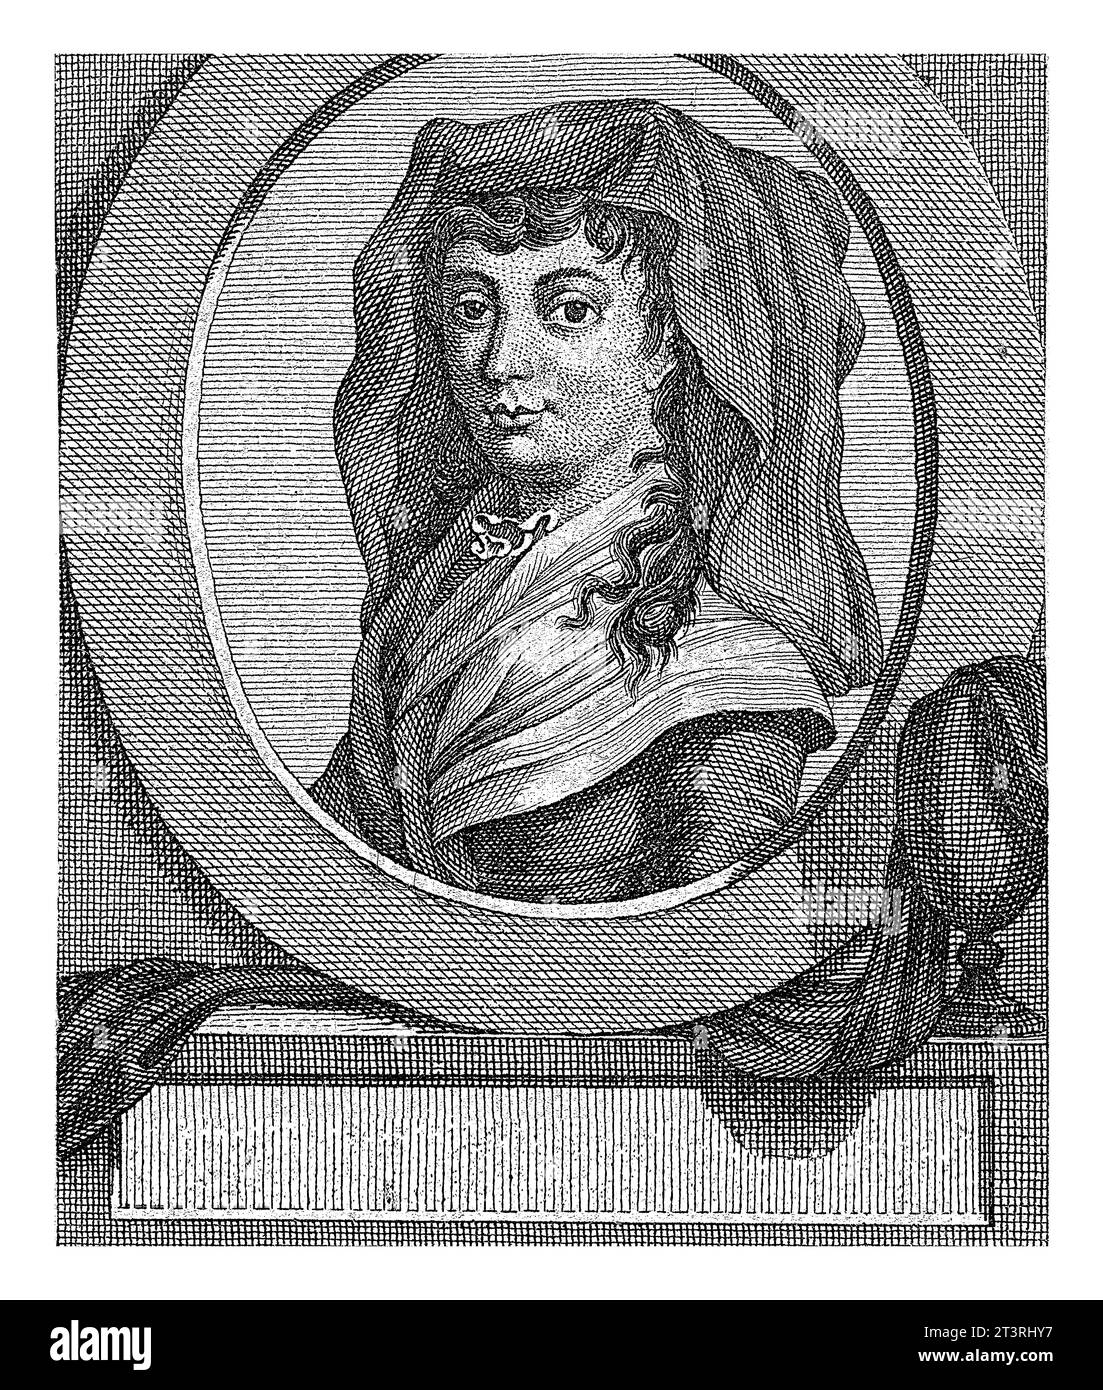 Portrait of Marie-Jeanne Roland de la Platiere, Carel Jacob de Huyser, 1763 - 1804 Bust of Marie-Jeanne Roland de la Platiere, politician, to the left Stock Photo